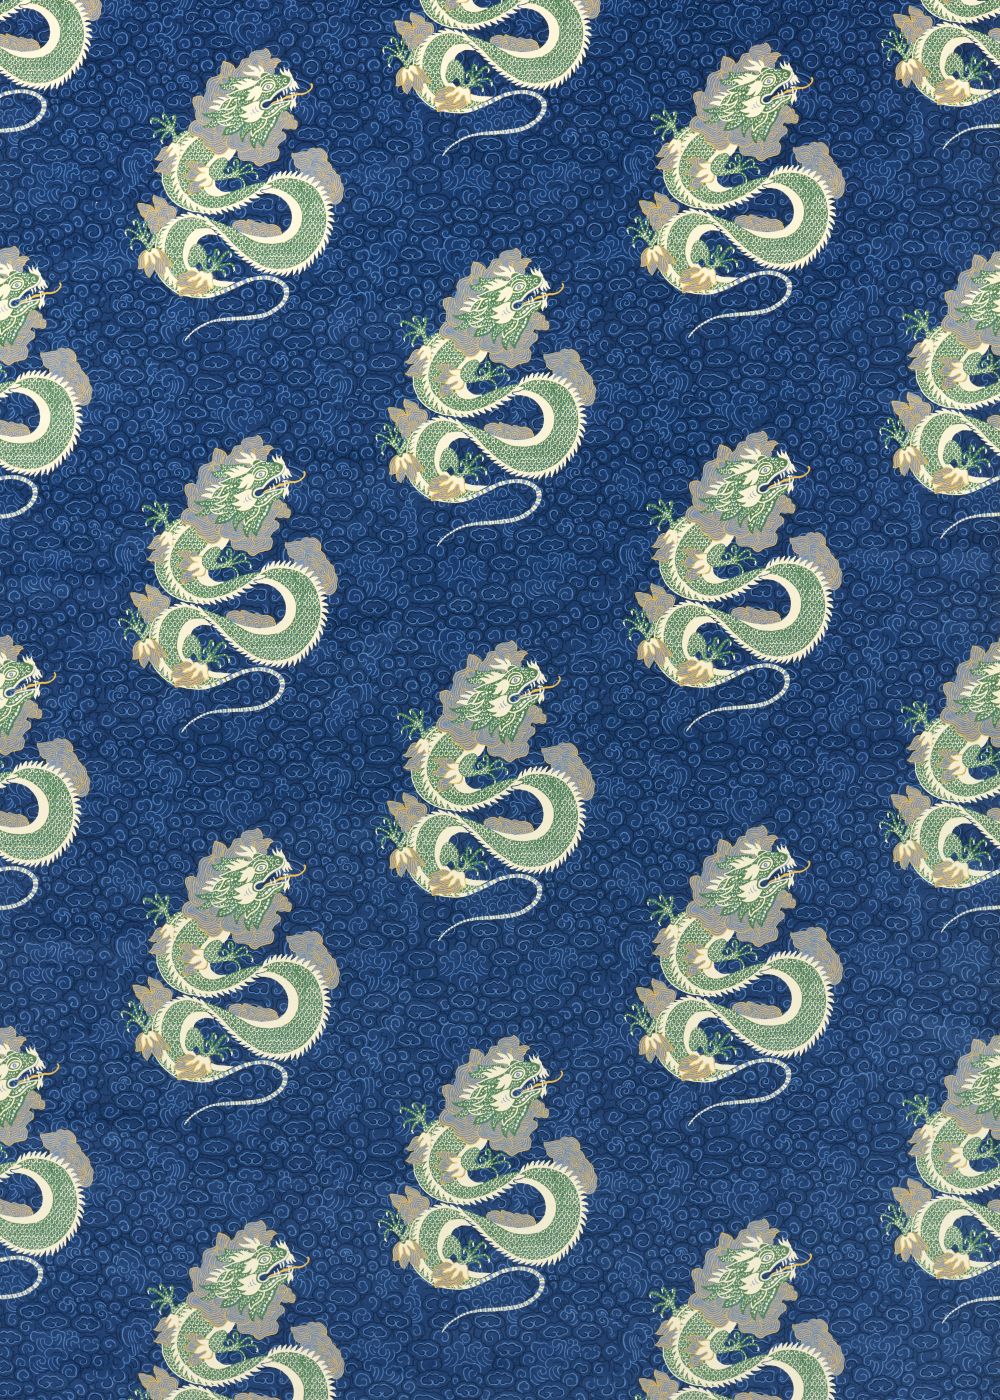 Water Dragon Fabric - Emperor Blue / Emerald - by Sanderson